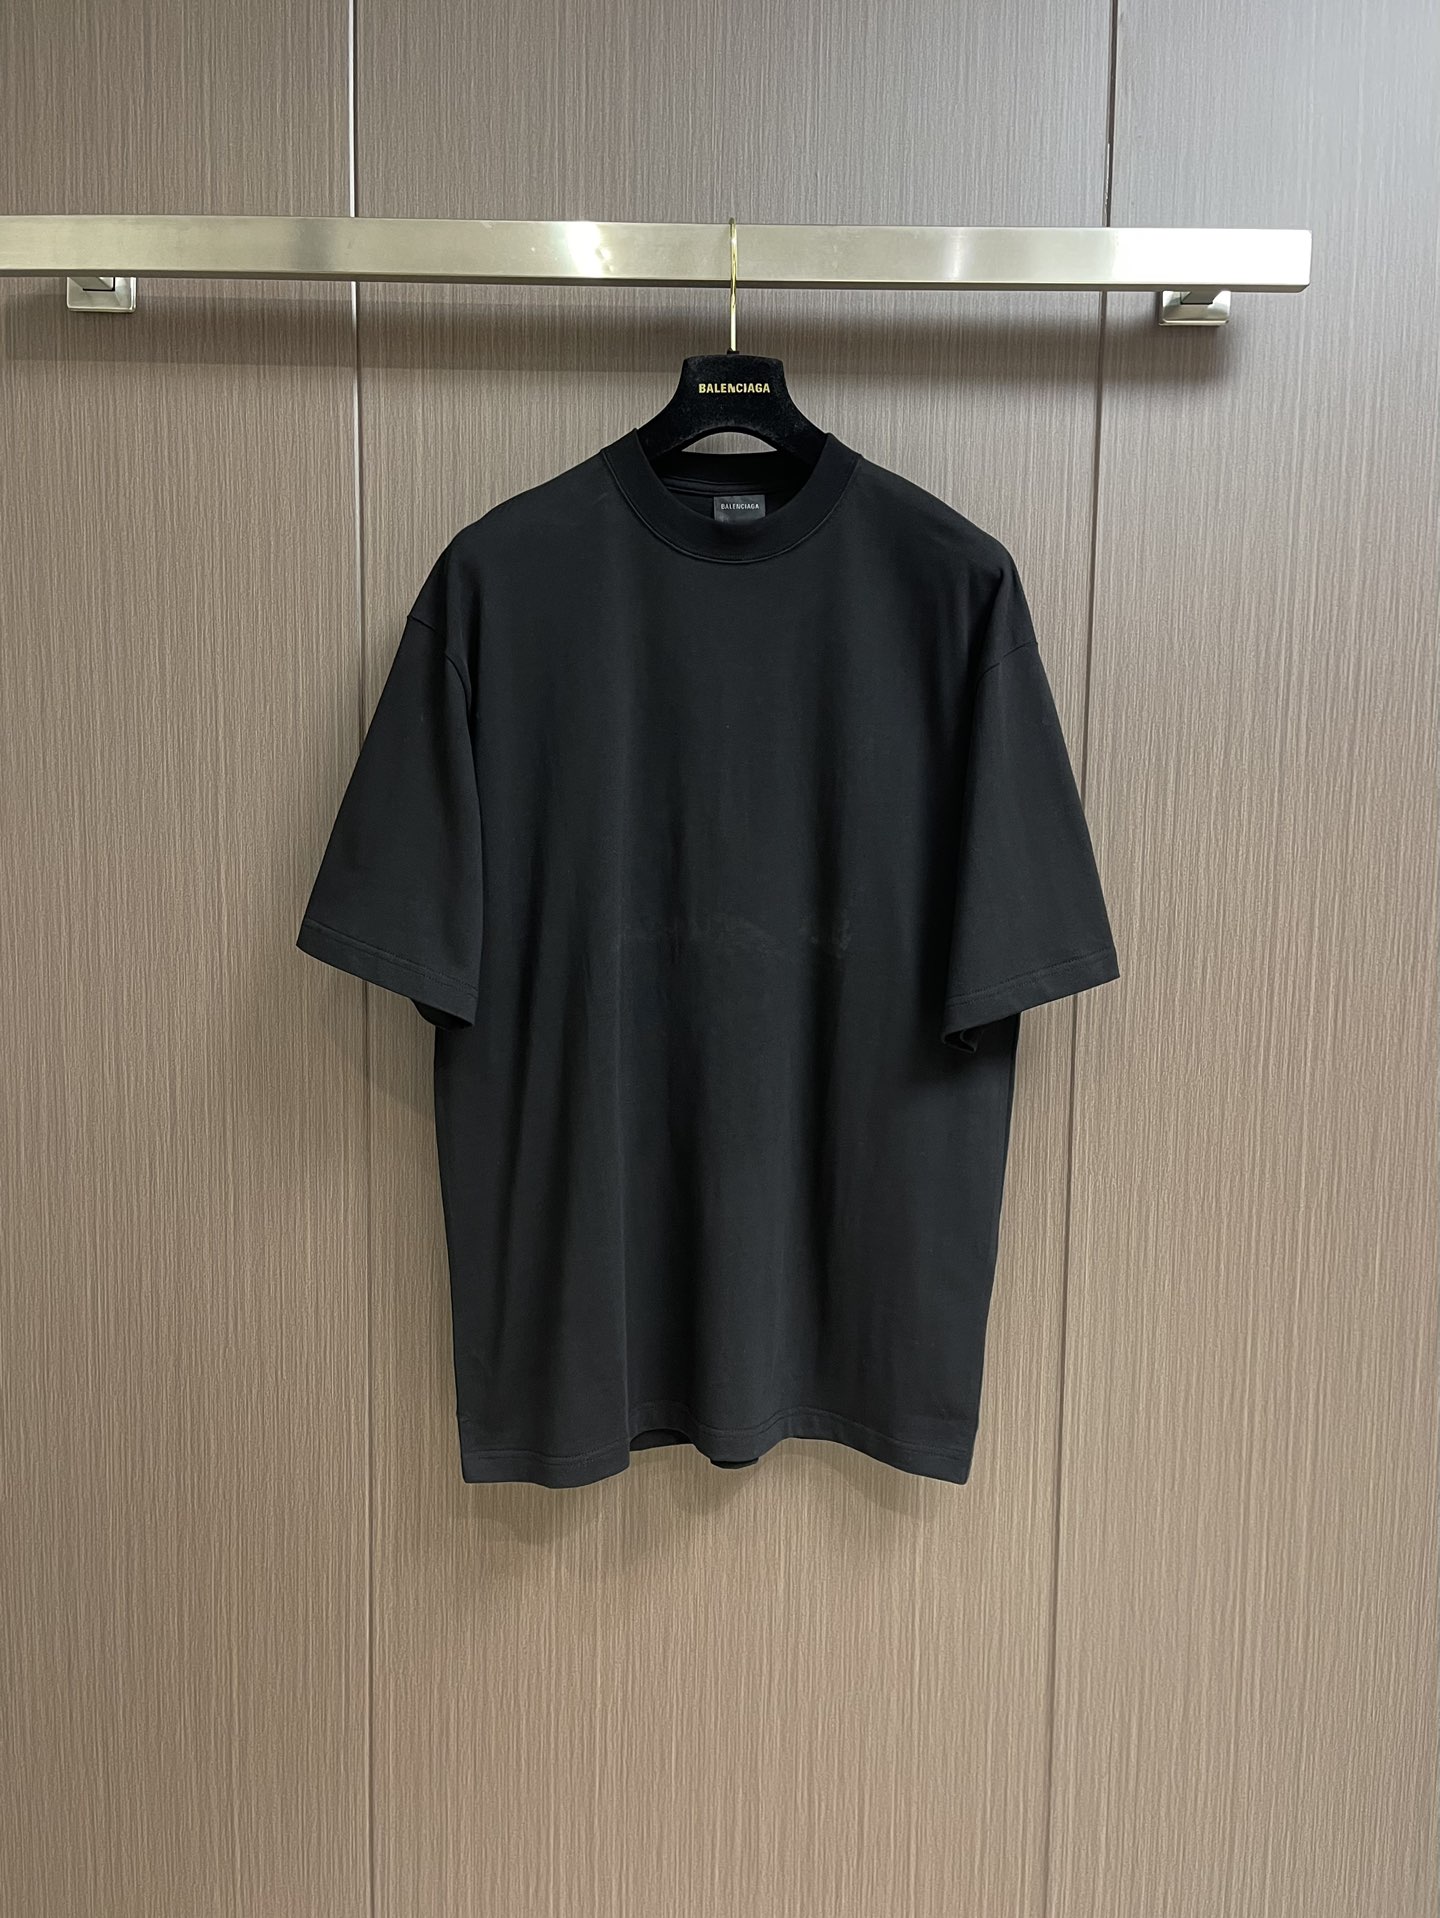 Balenciaga Kleding T-Shirt Zwart Unisex Katoen Korte mouw